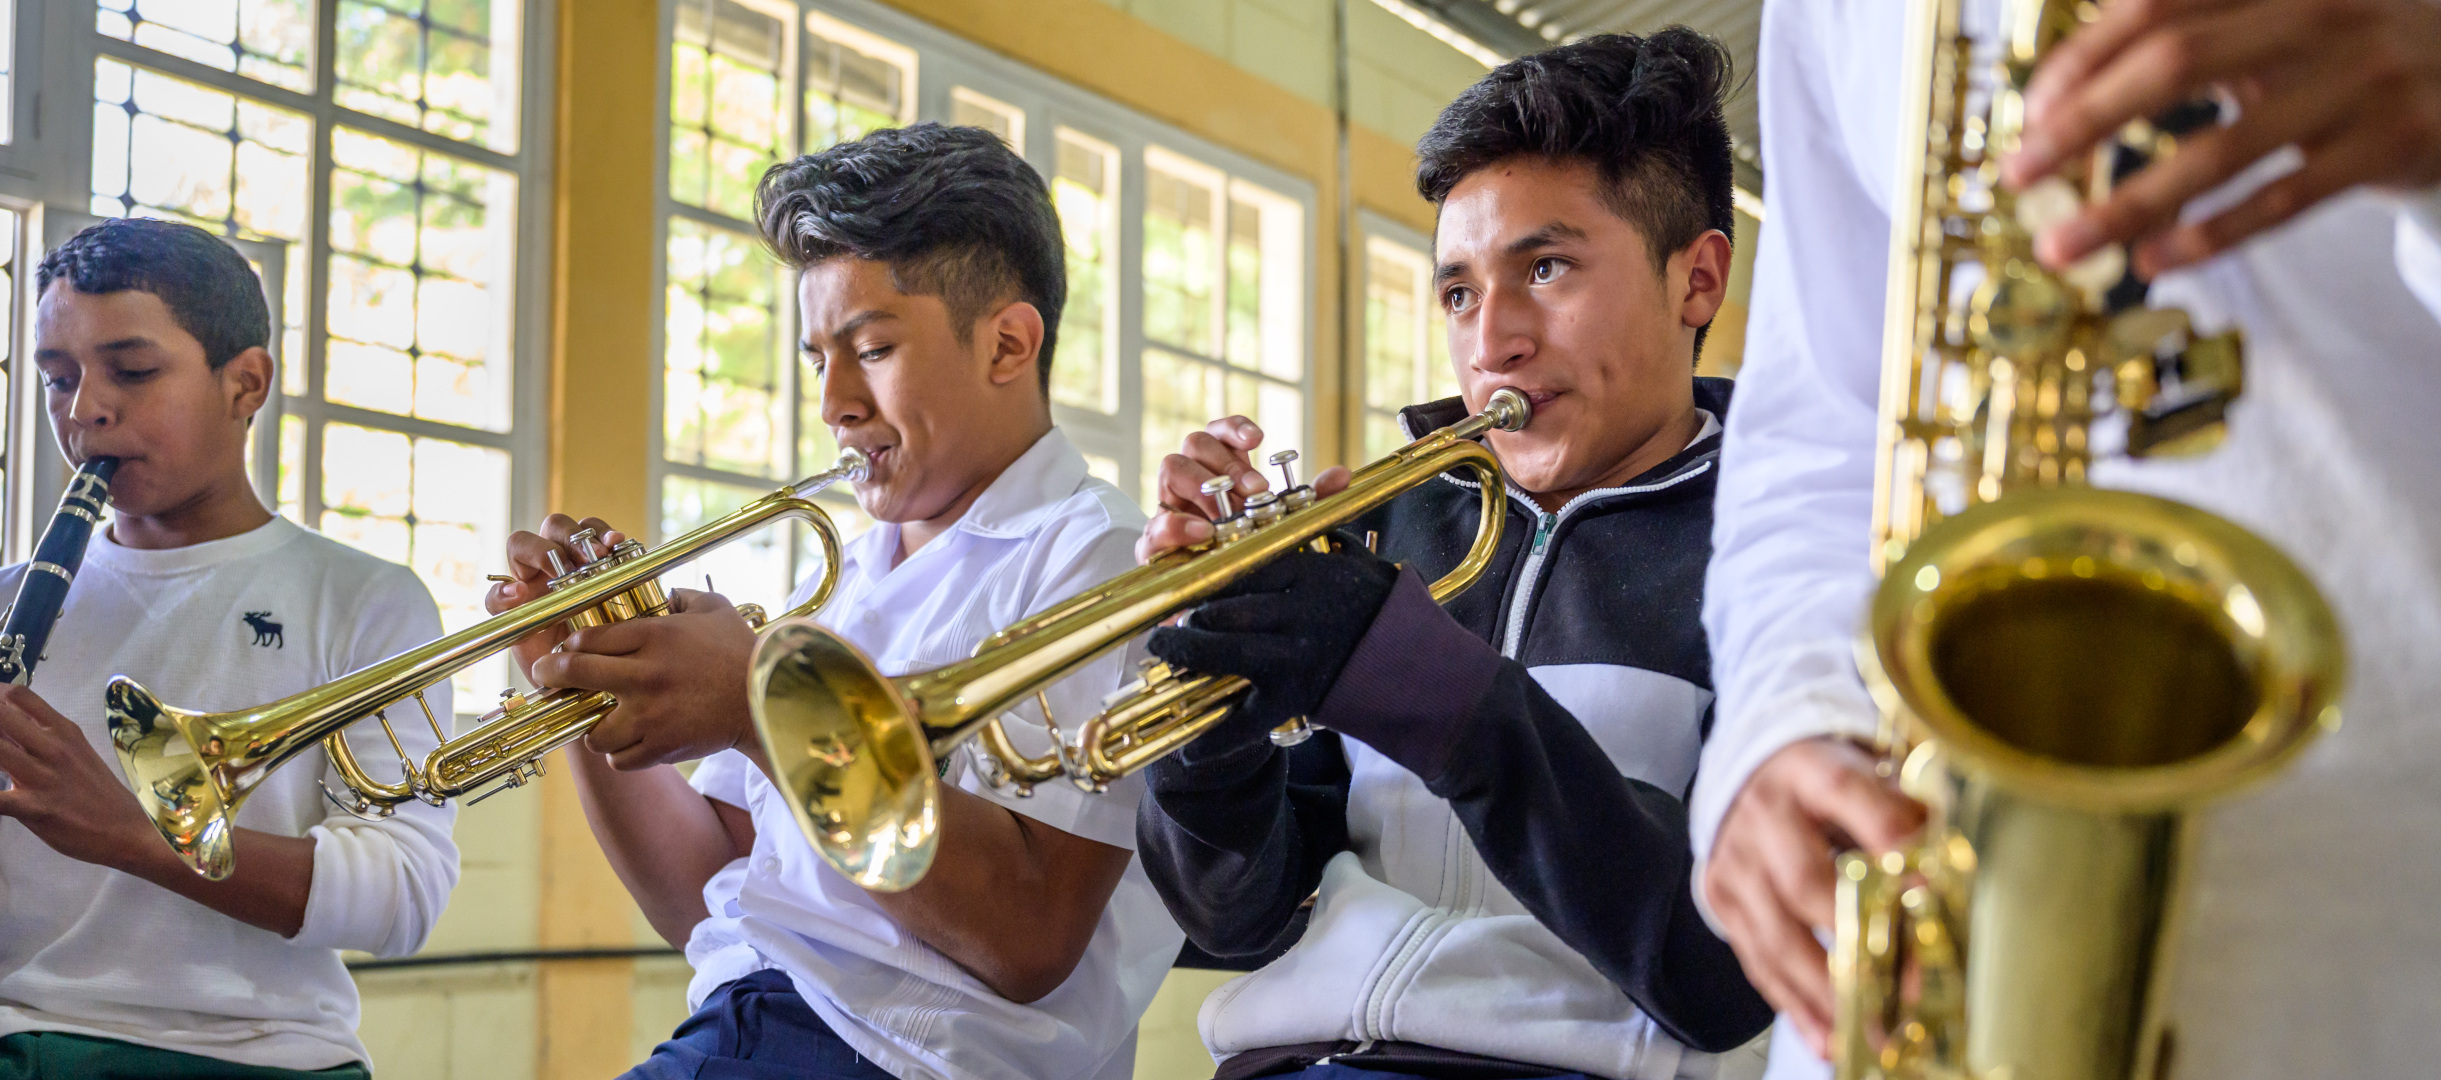 Patenkind Ever aus Honduras spielt in der Schulband die Trompete.